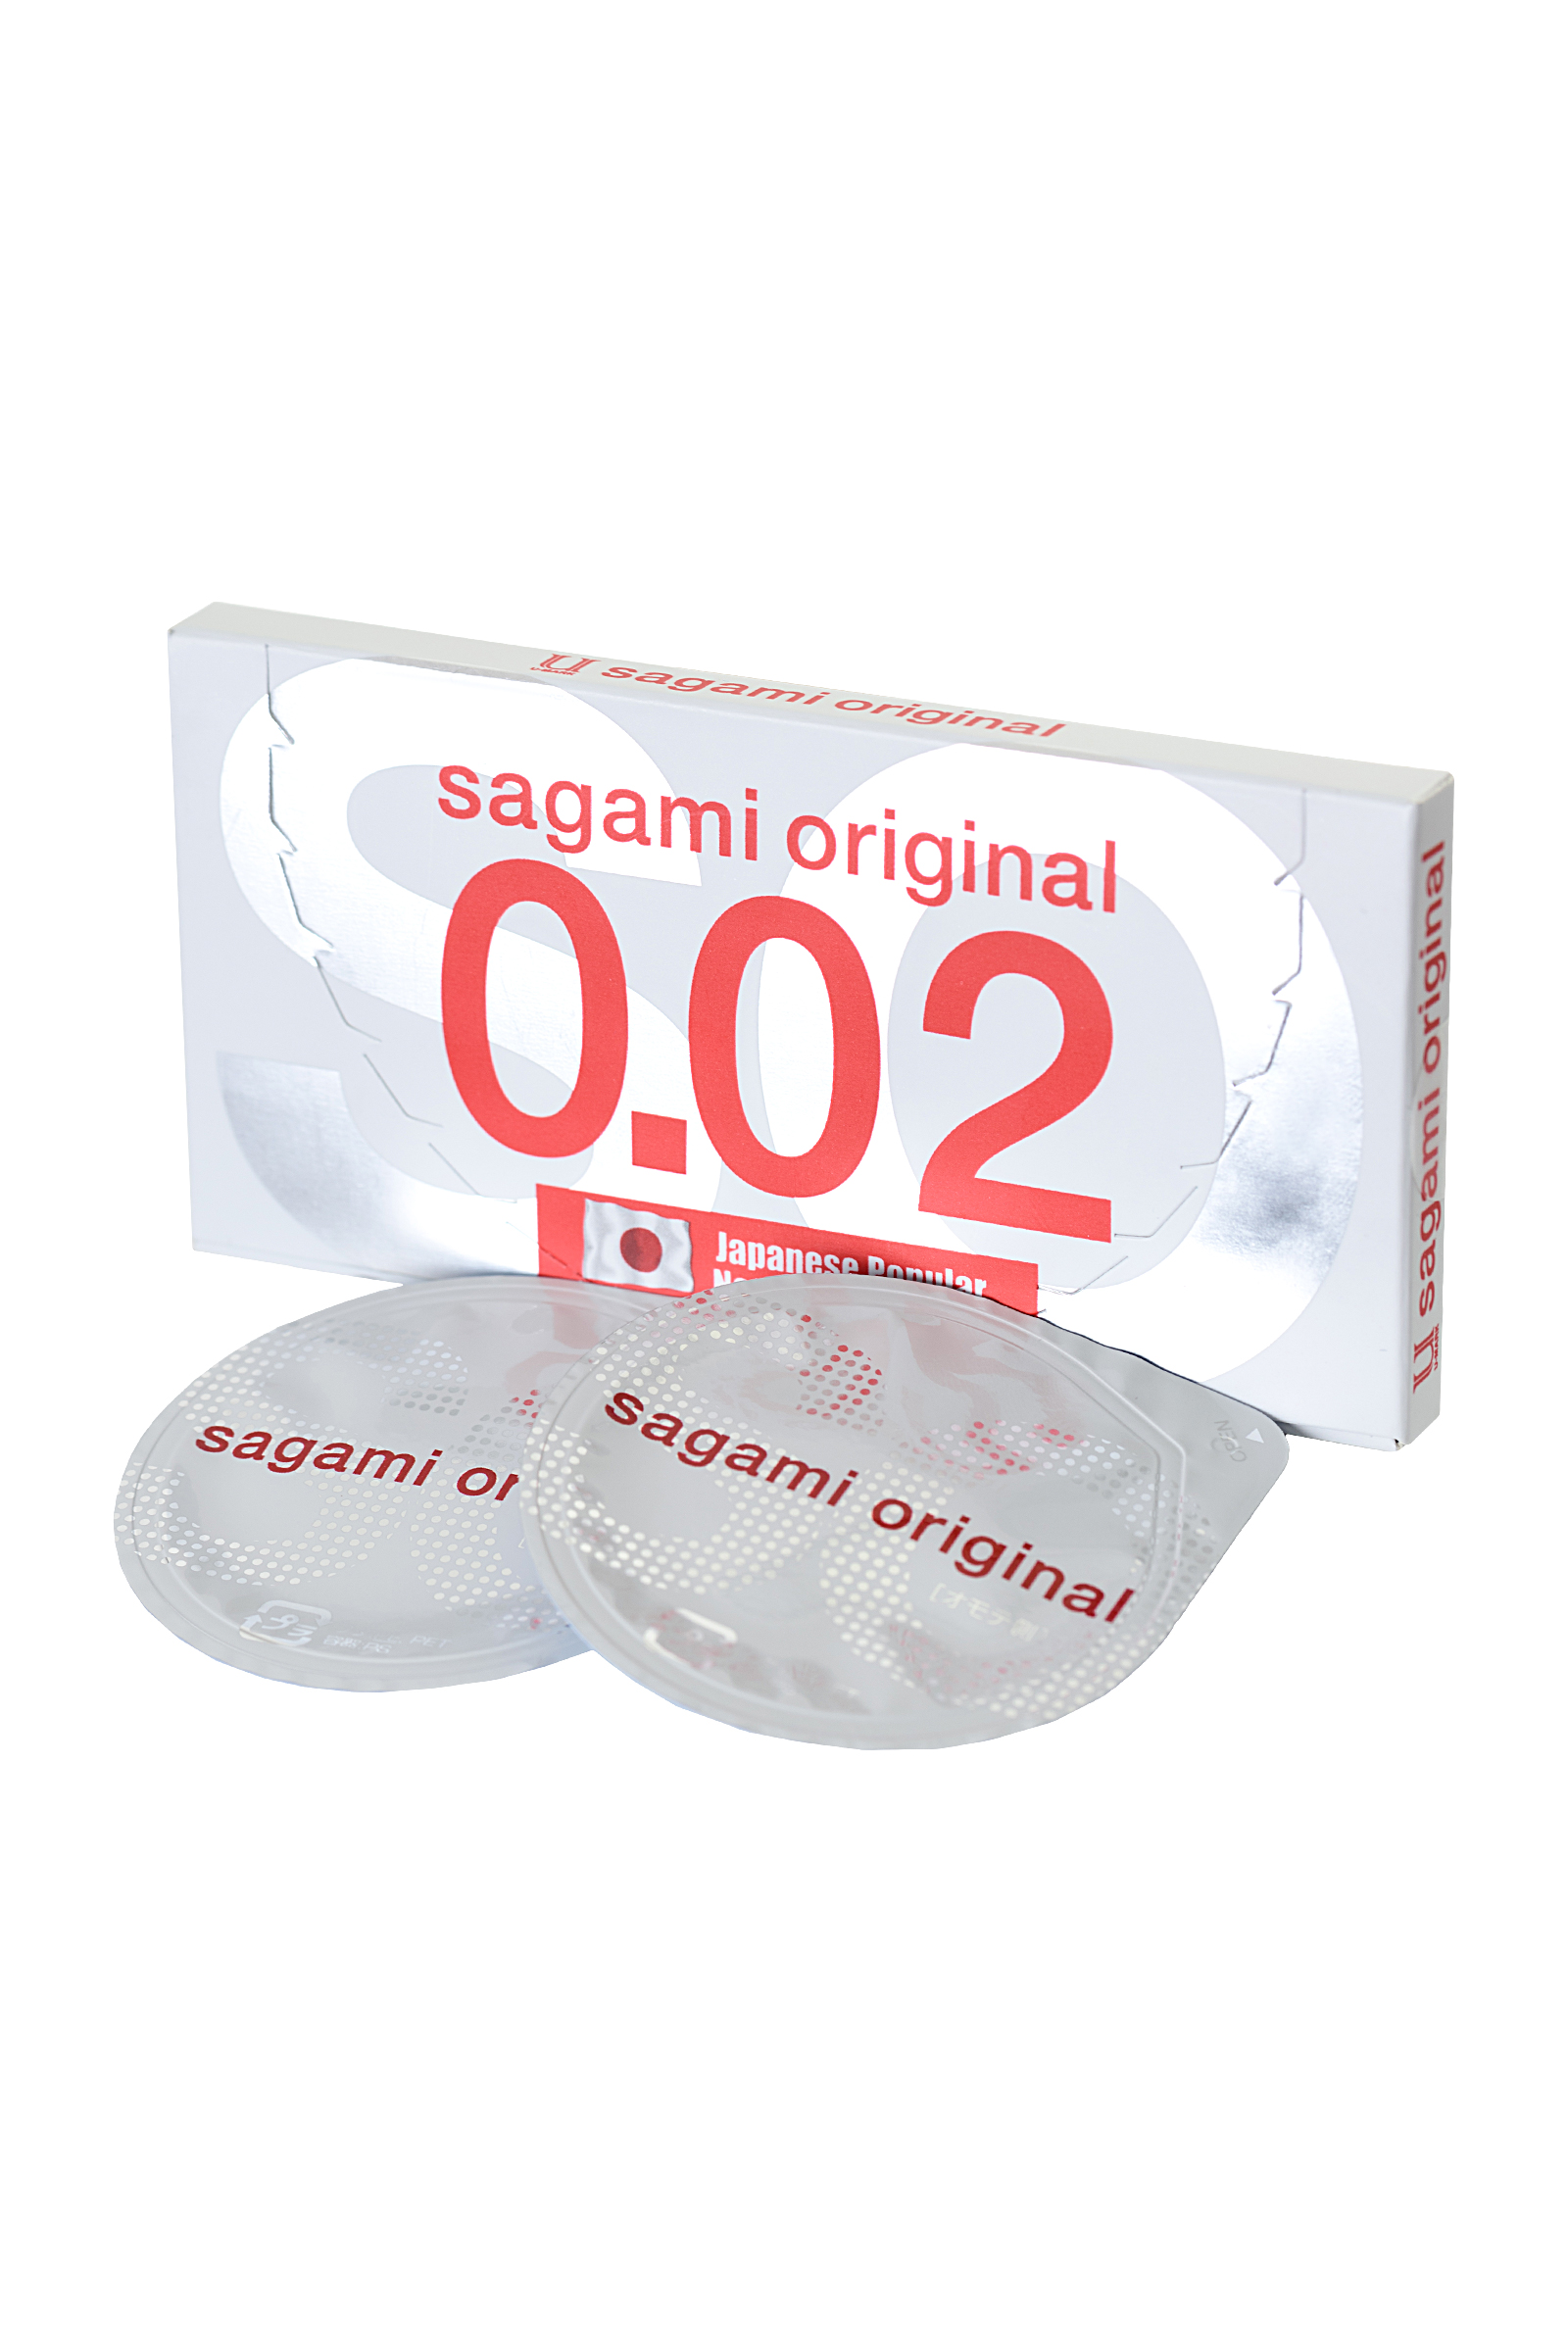 Презервативы Sagami, original 0.02, полиуретан, ультратонкие, гладкие, 19 см, 5,8 см, 2 шт. фото 1. Фото N4